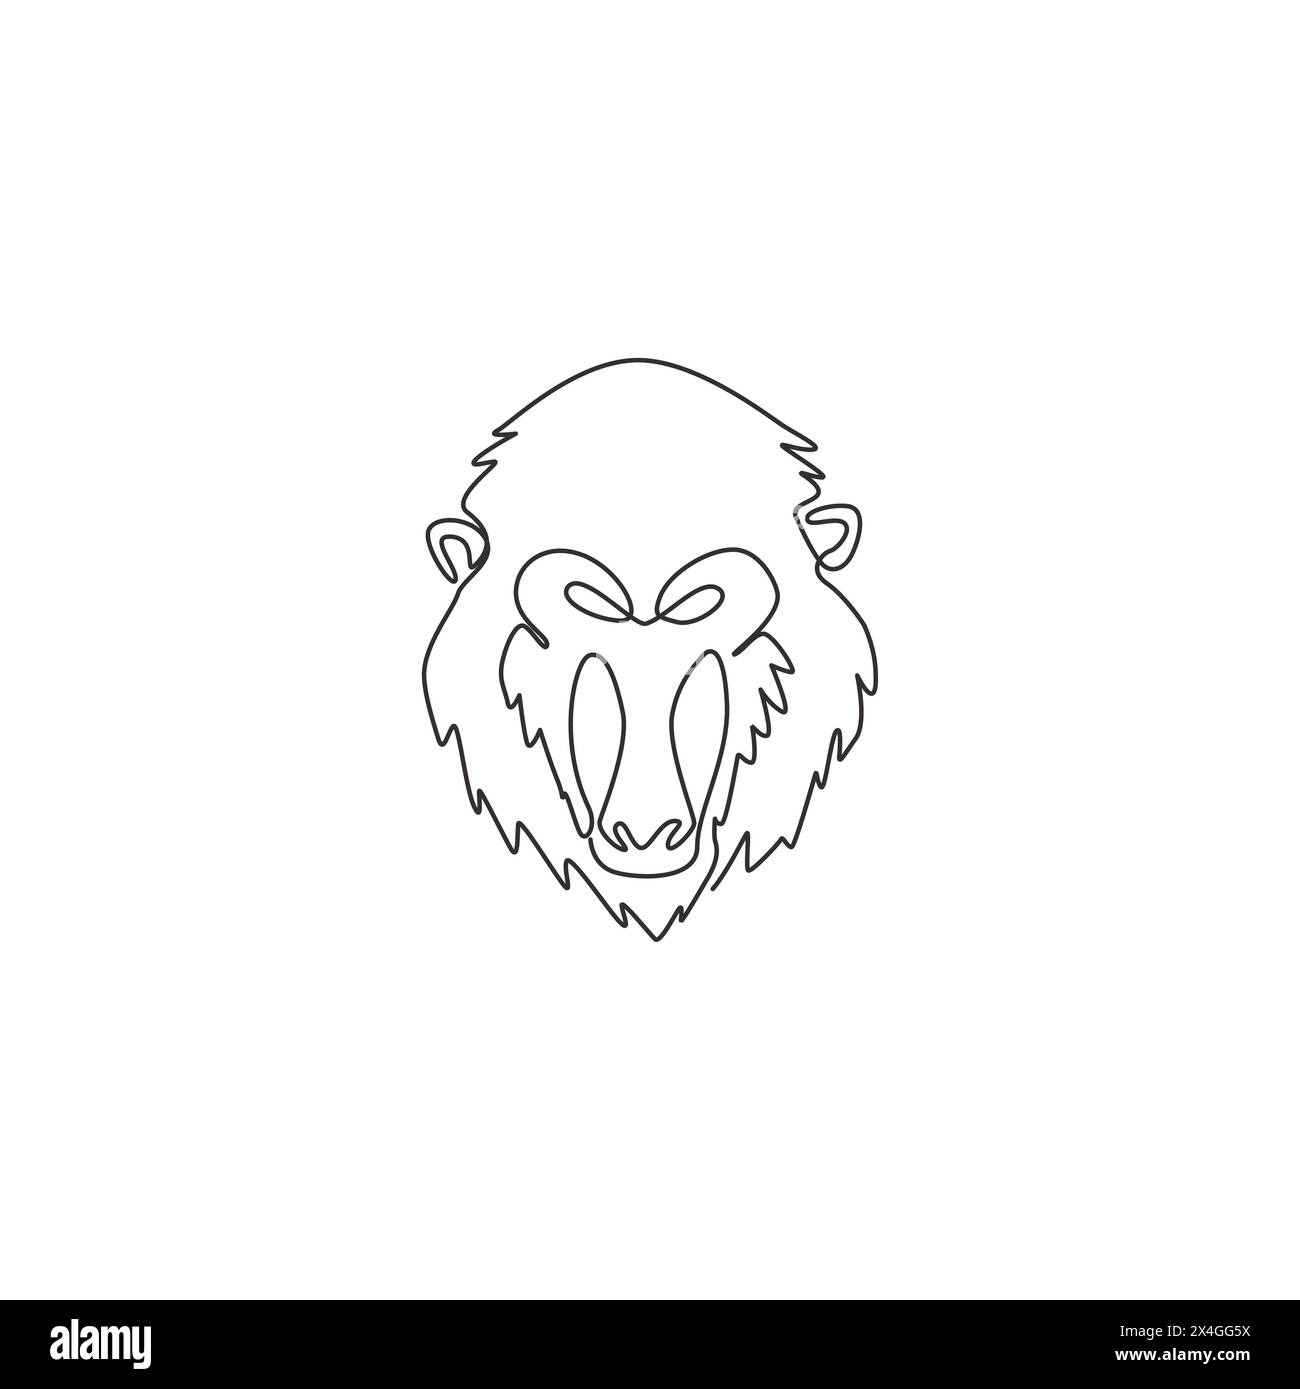 Un disegno a linea singola di una testa mandrino esotica per l'identità del logo aziendale. Il concetto di mascotte con il volto delle scimmie più grande per l'icona del parco safari nazionale. Camera moderna Illustrazione Vettoriale